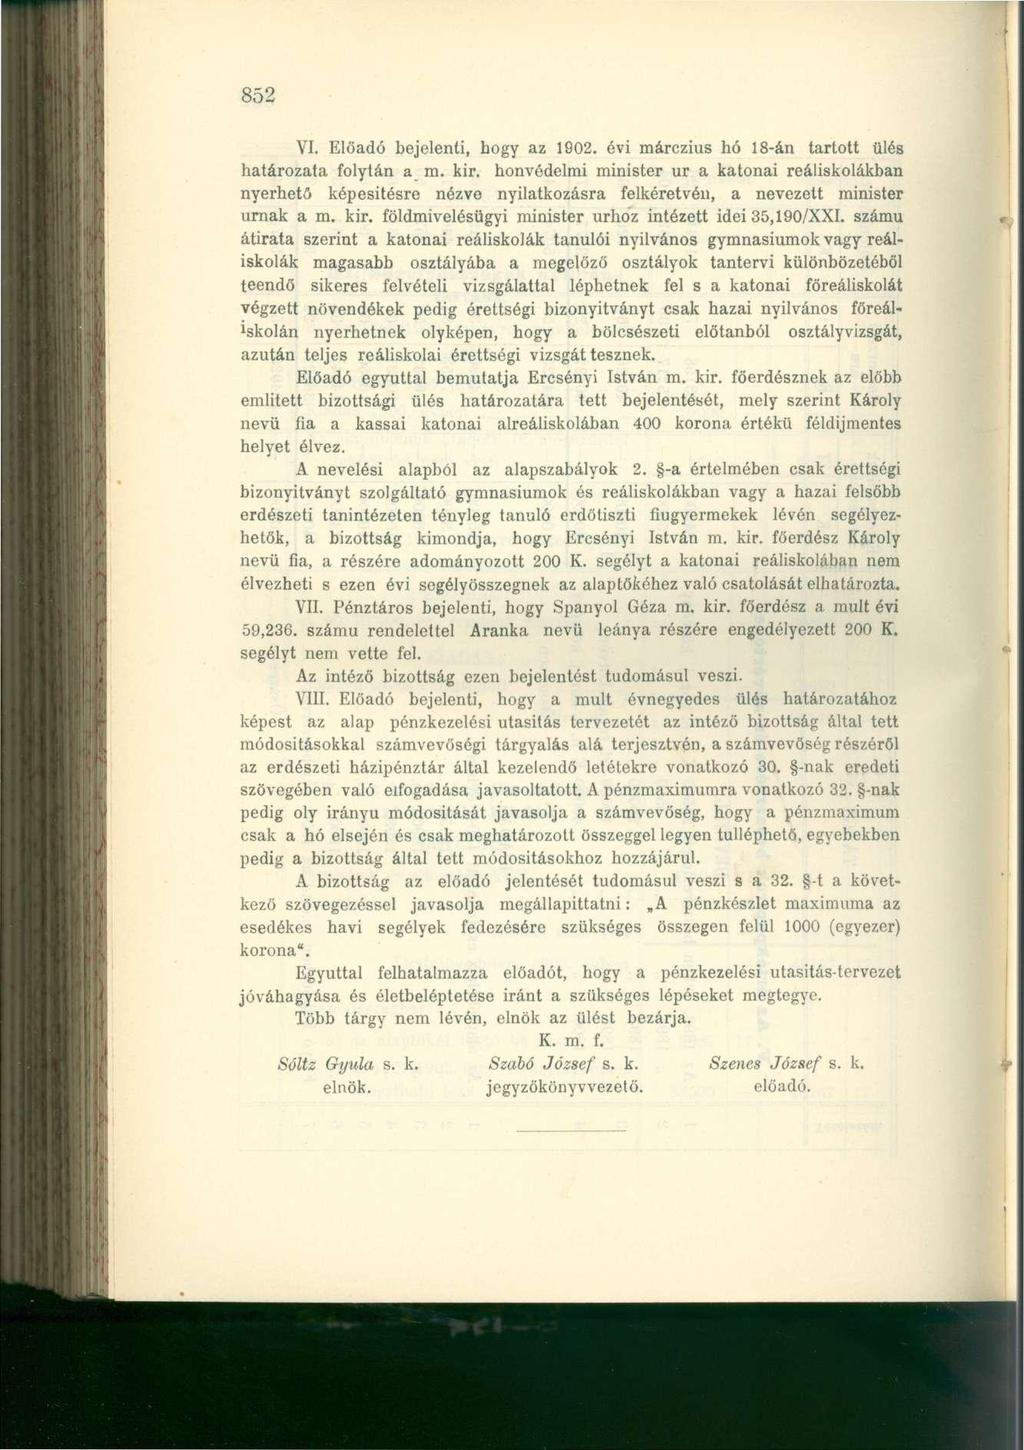 852 VI. Előadó bejelenti, hogy az 1902. évi márczius hó 18-án tartott ülés határozata folytán a m. kir.